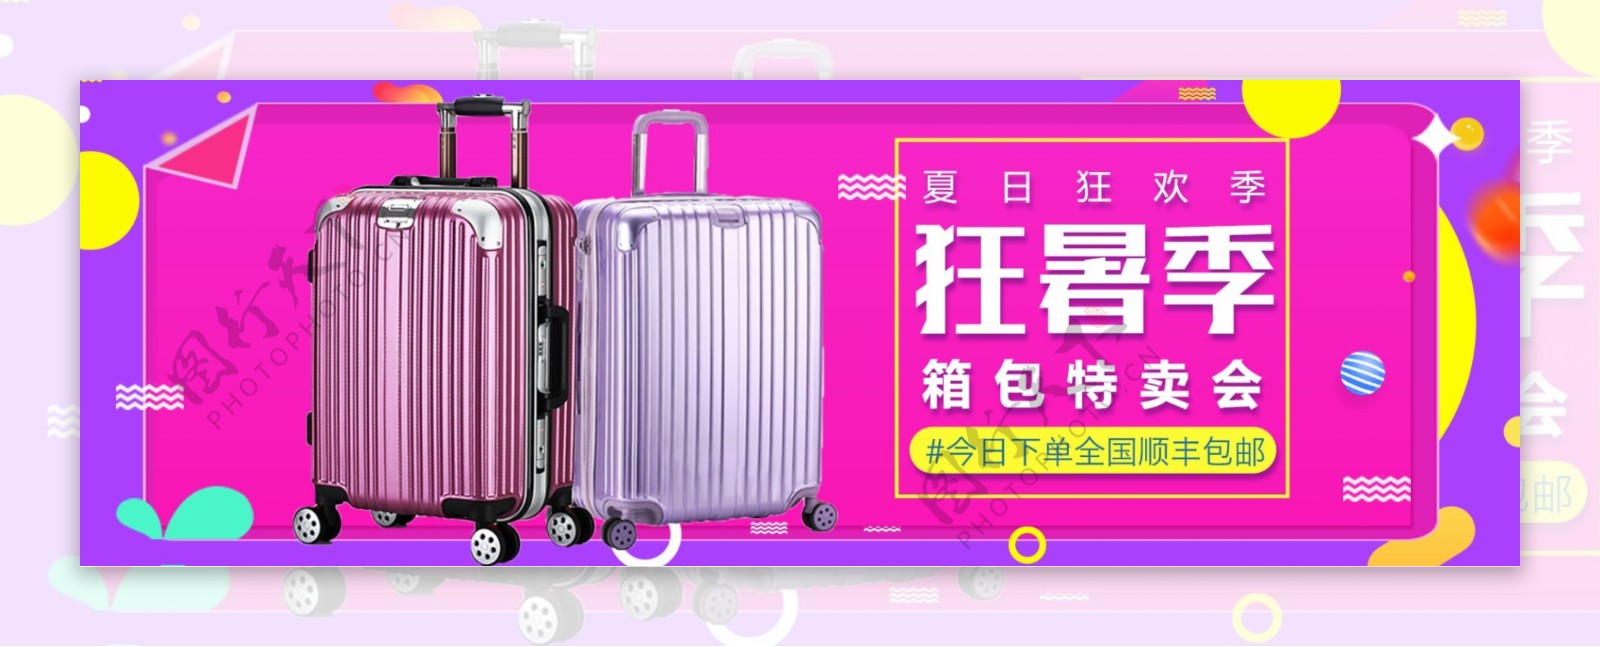 电商淘宝天猫简约风夏日狂暑季促销海报banner